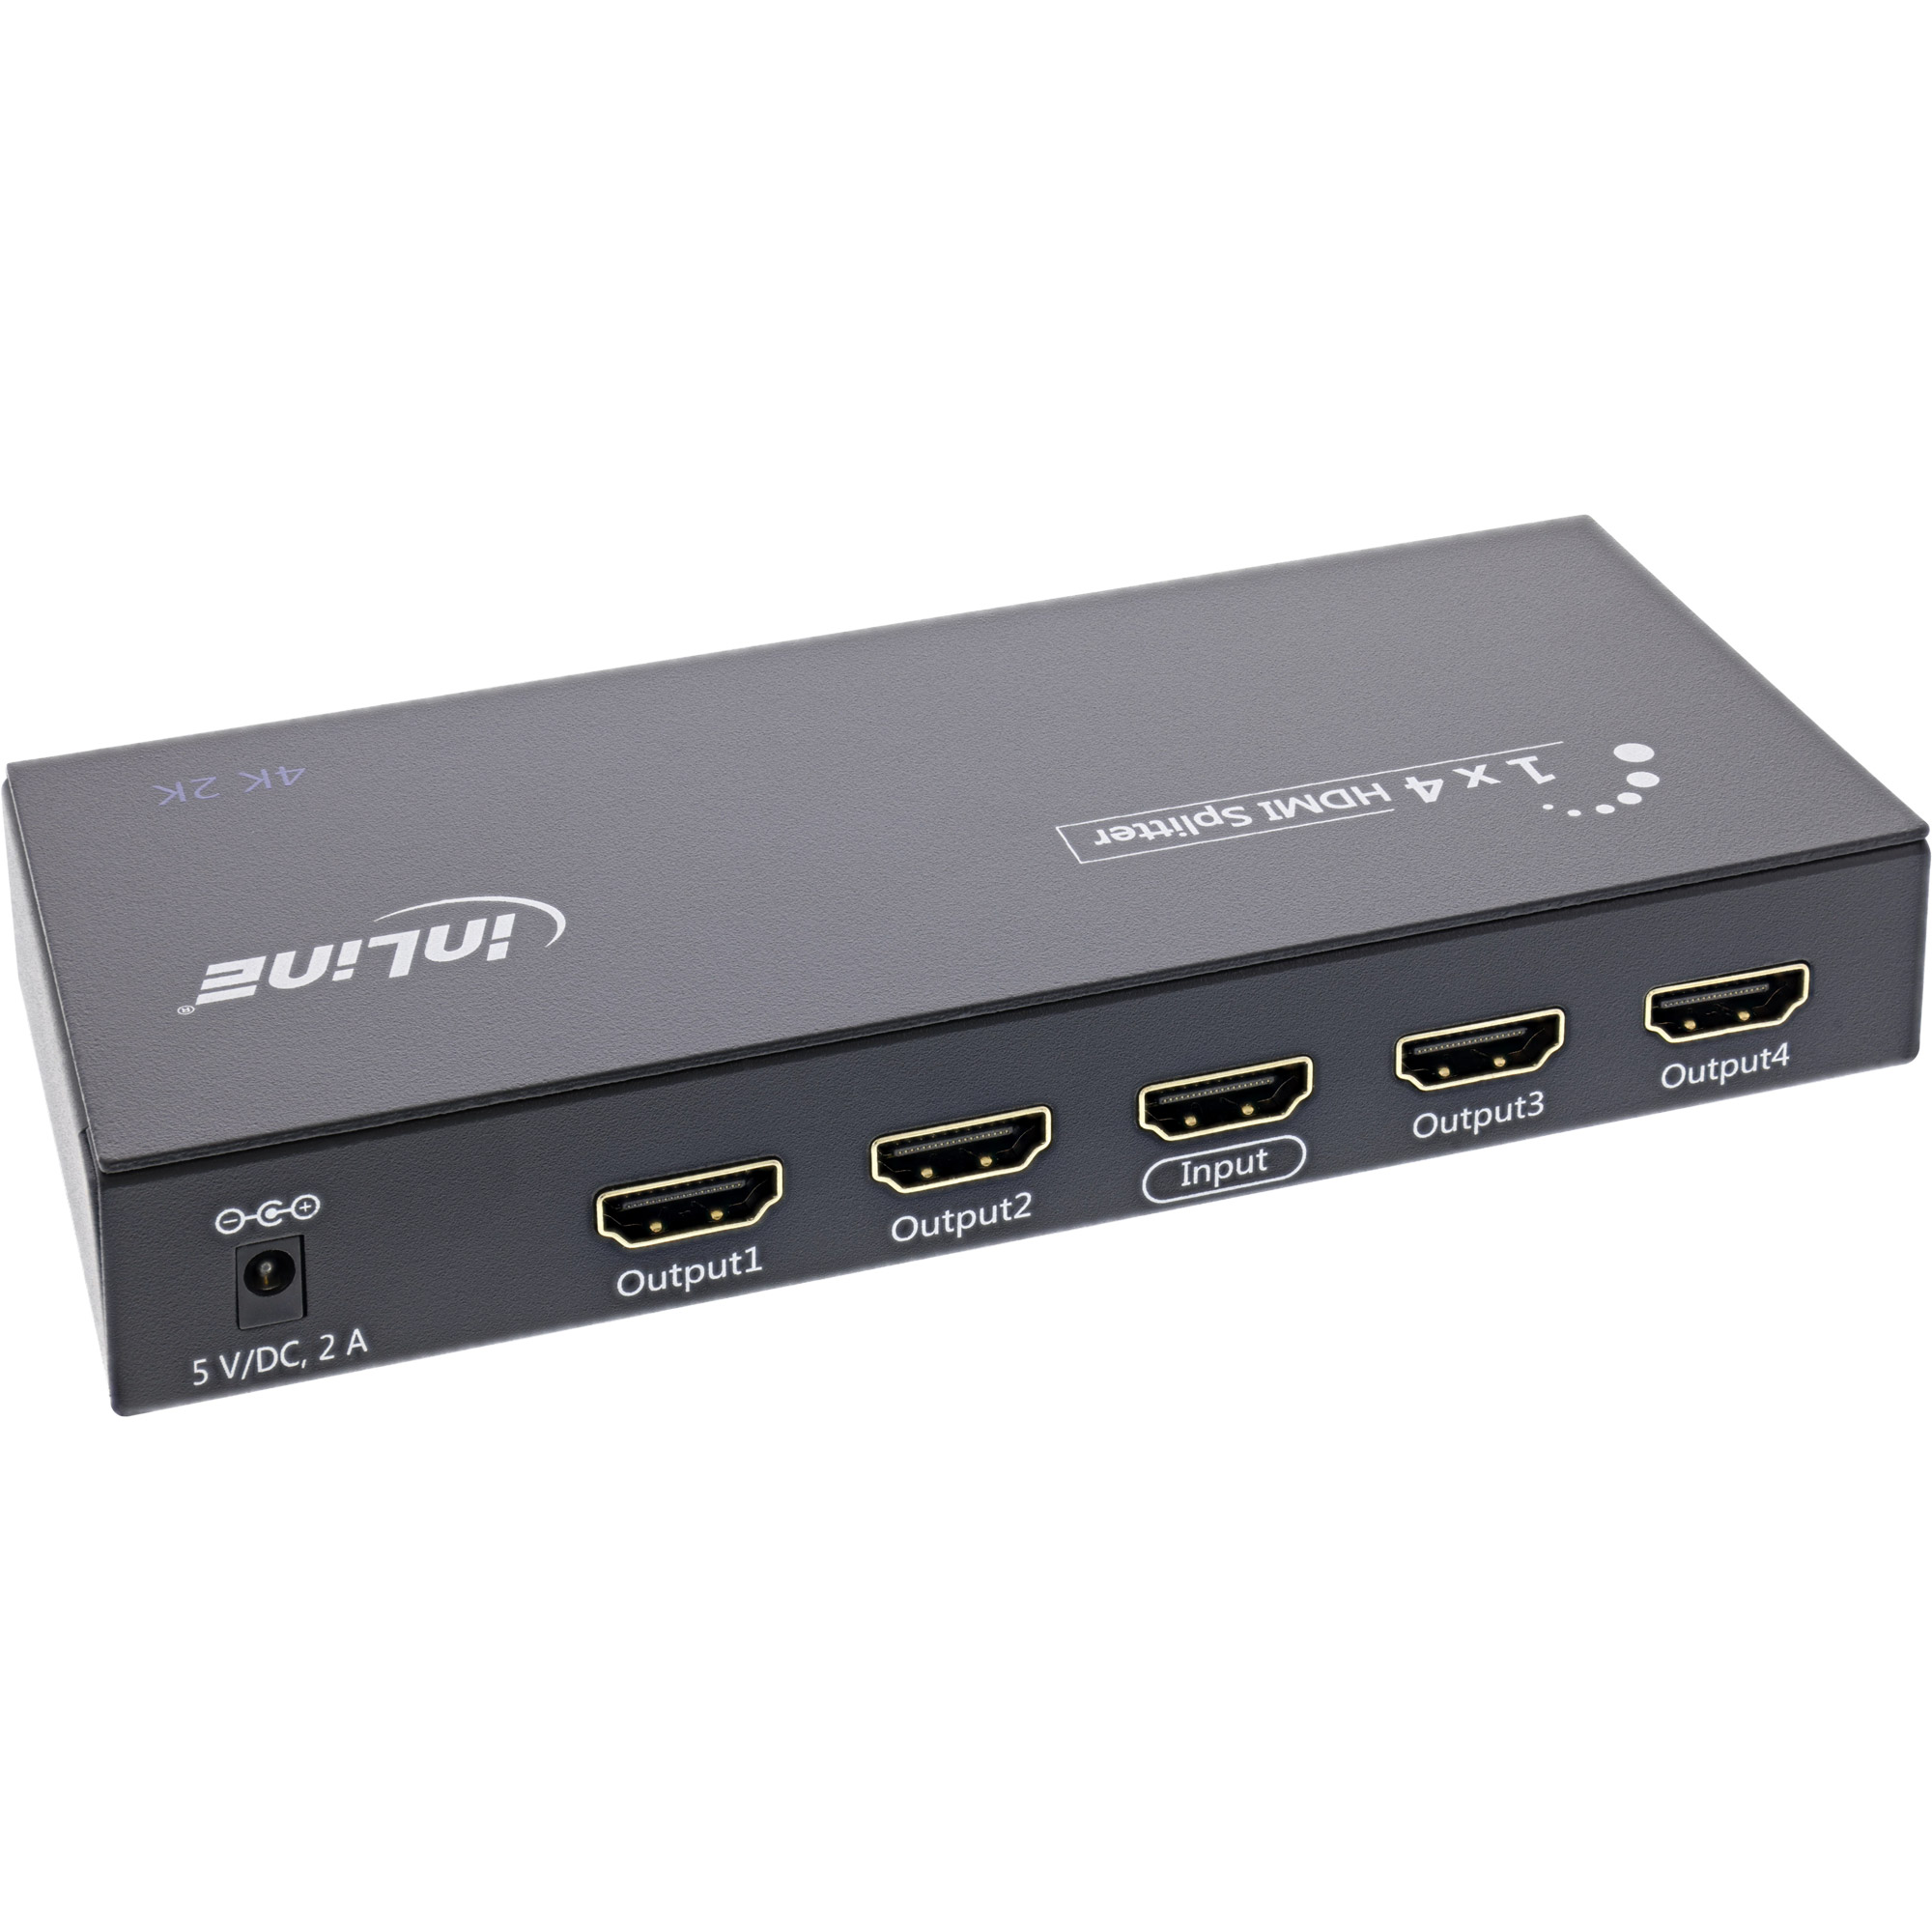 InLine HDMI Splitter 65010 - Video-/Audio - 1 x 4 HDMI - 4K2K kompatibel